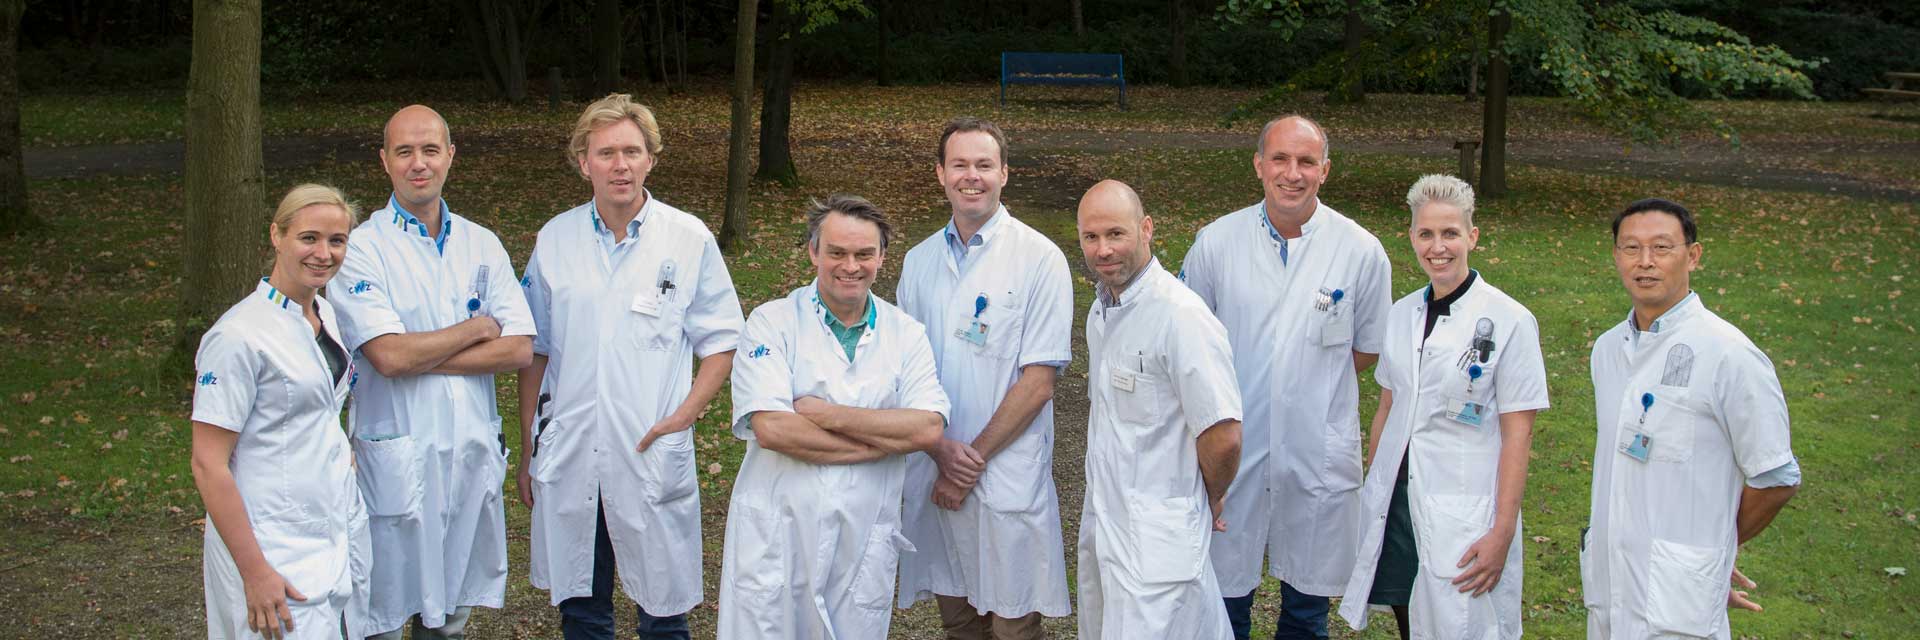 Orthopedie Nijmegen team